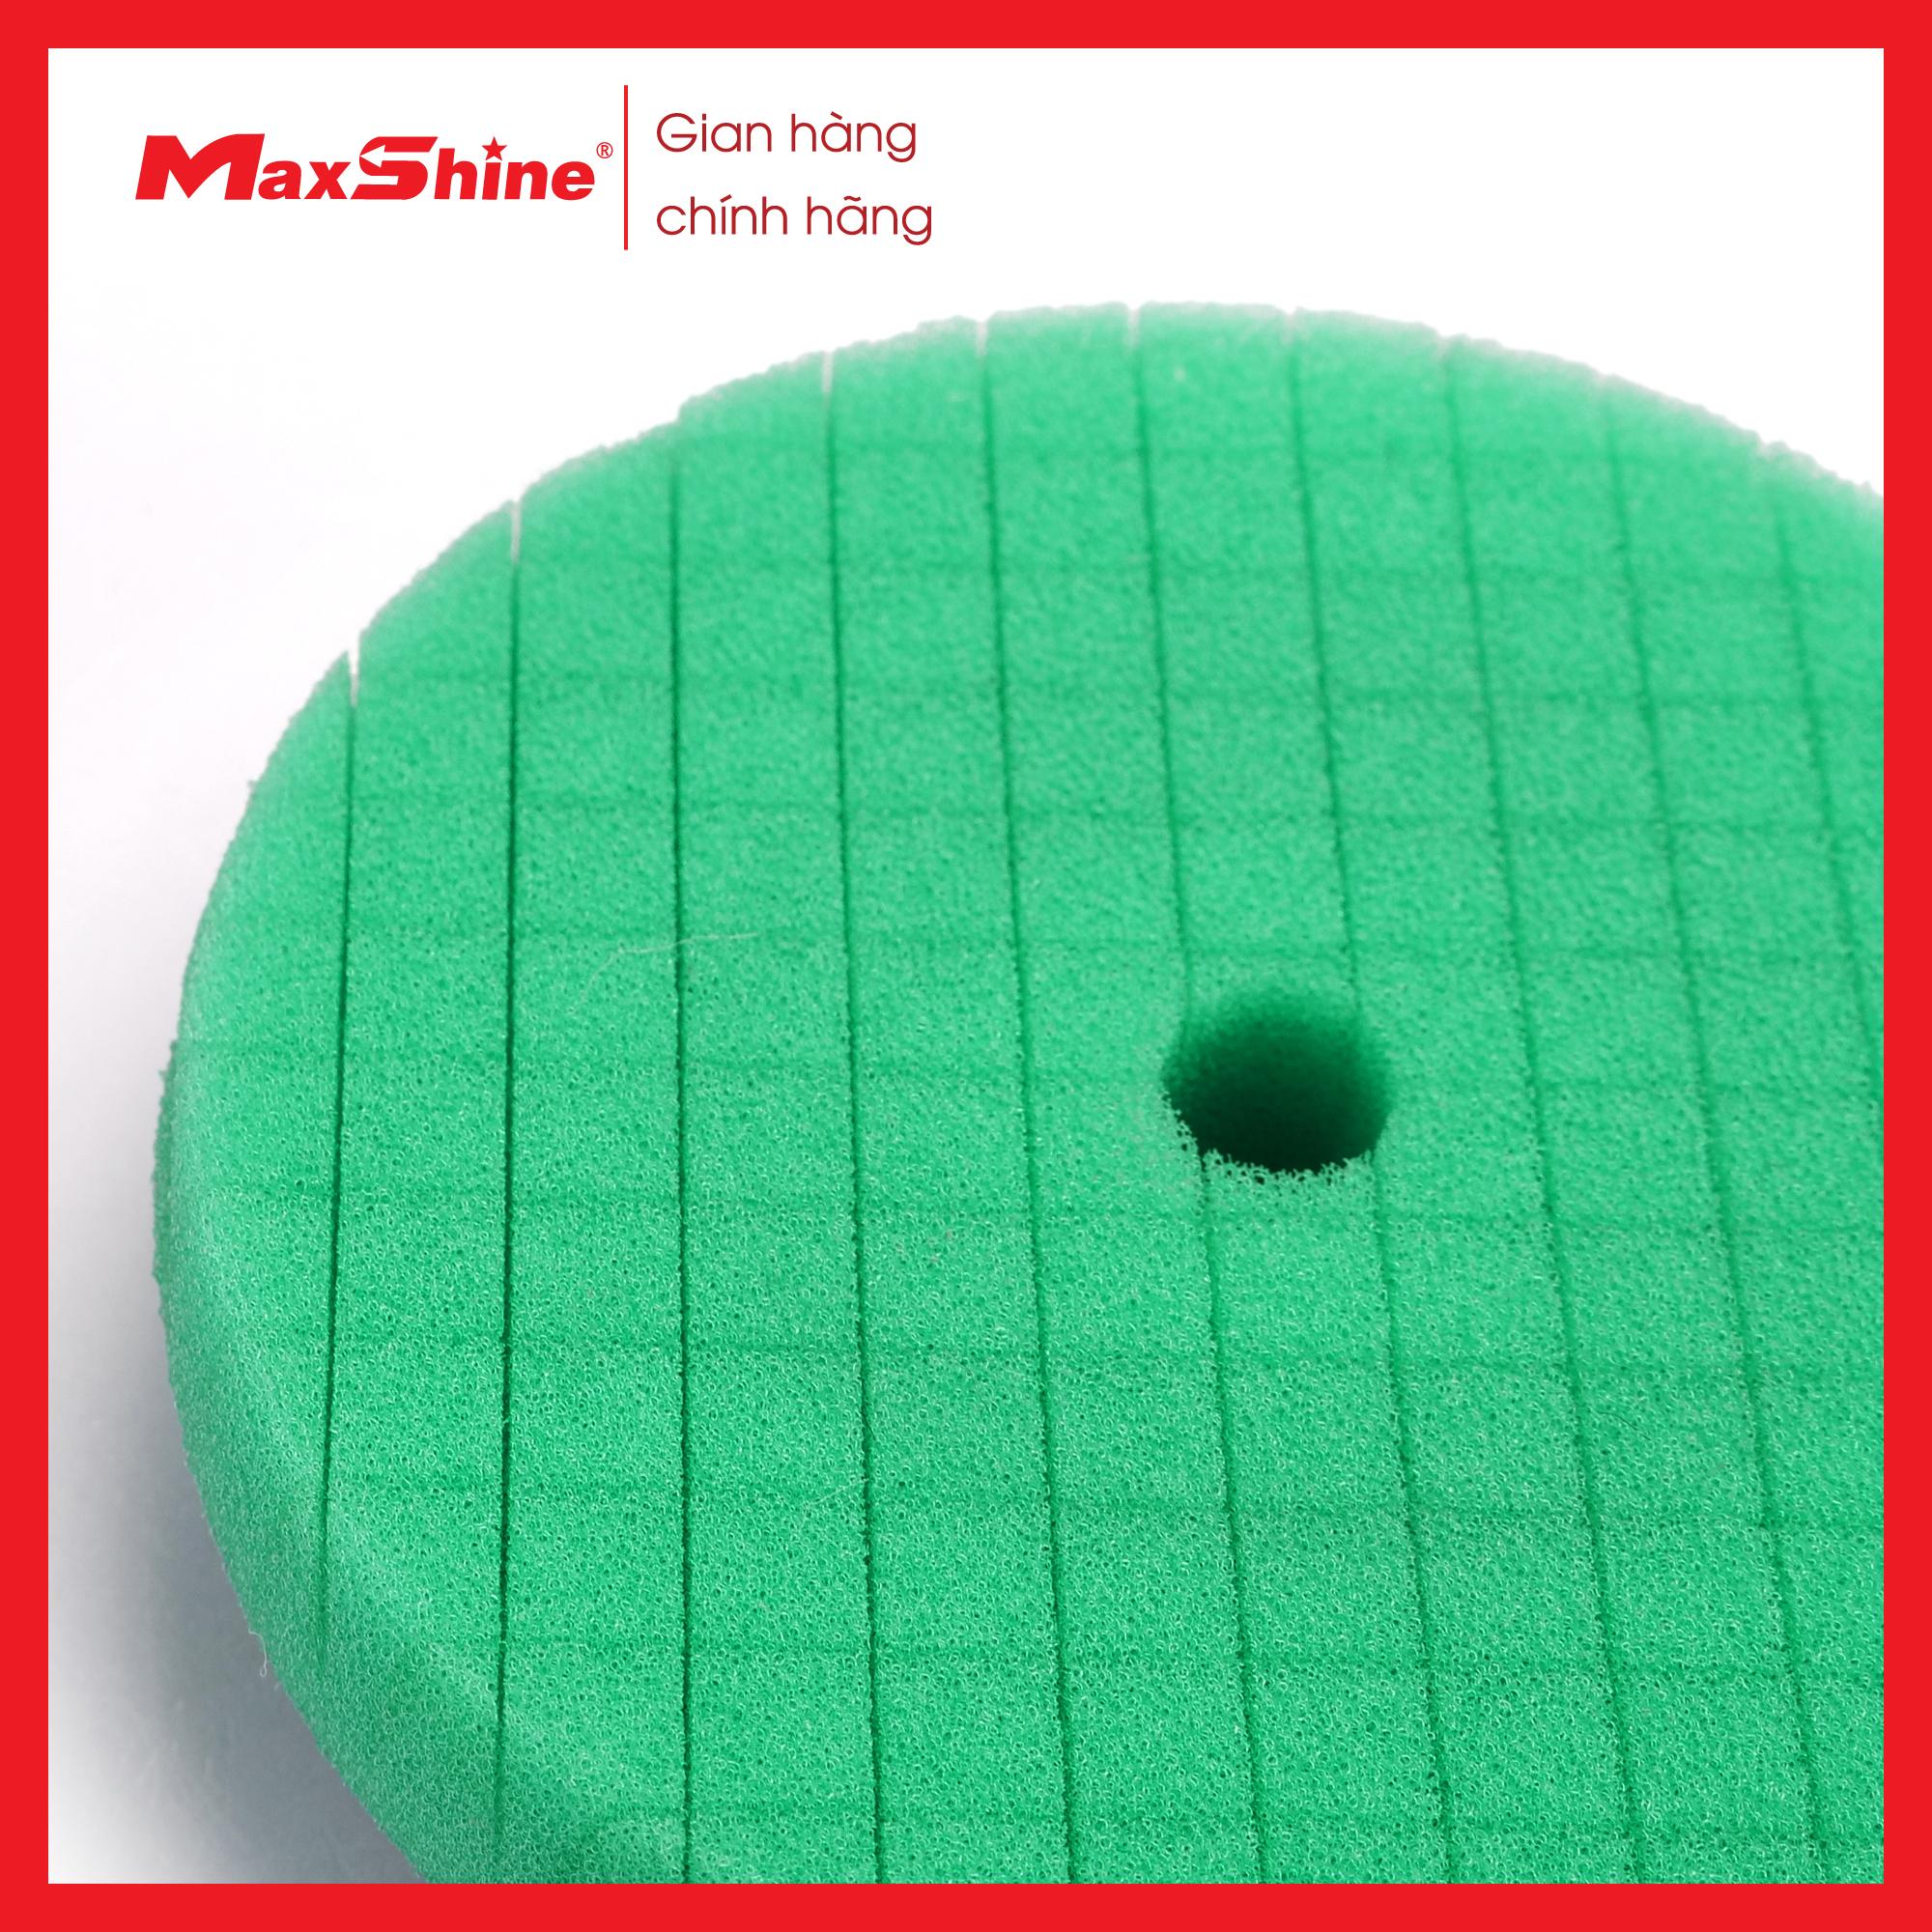 Phớt xốp/mút đánh bóng dạng Caro 5” inch phá xước Maxshine 2001135G làm từ xốp đặc biệt màu xanh lá cây, có khả năng chống ăn mòn và chống rách cao